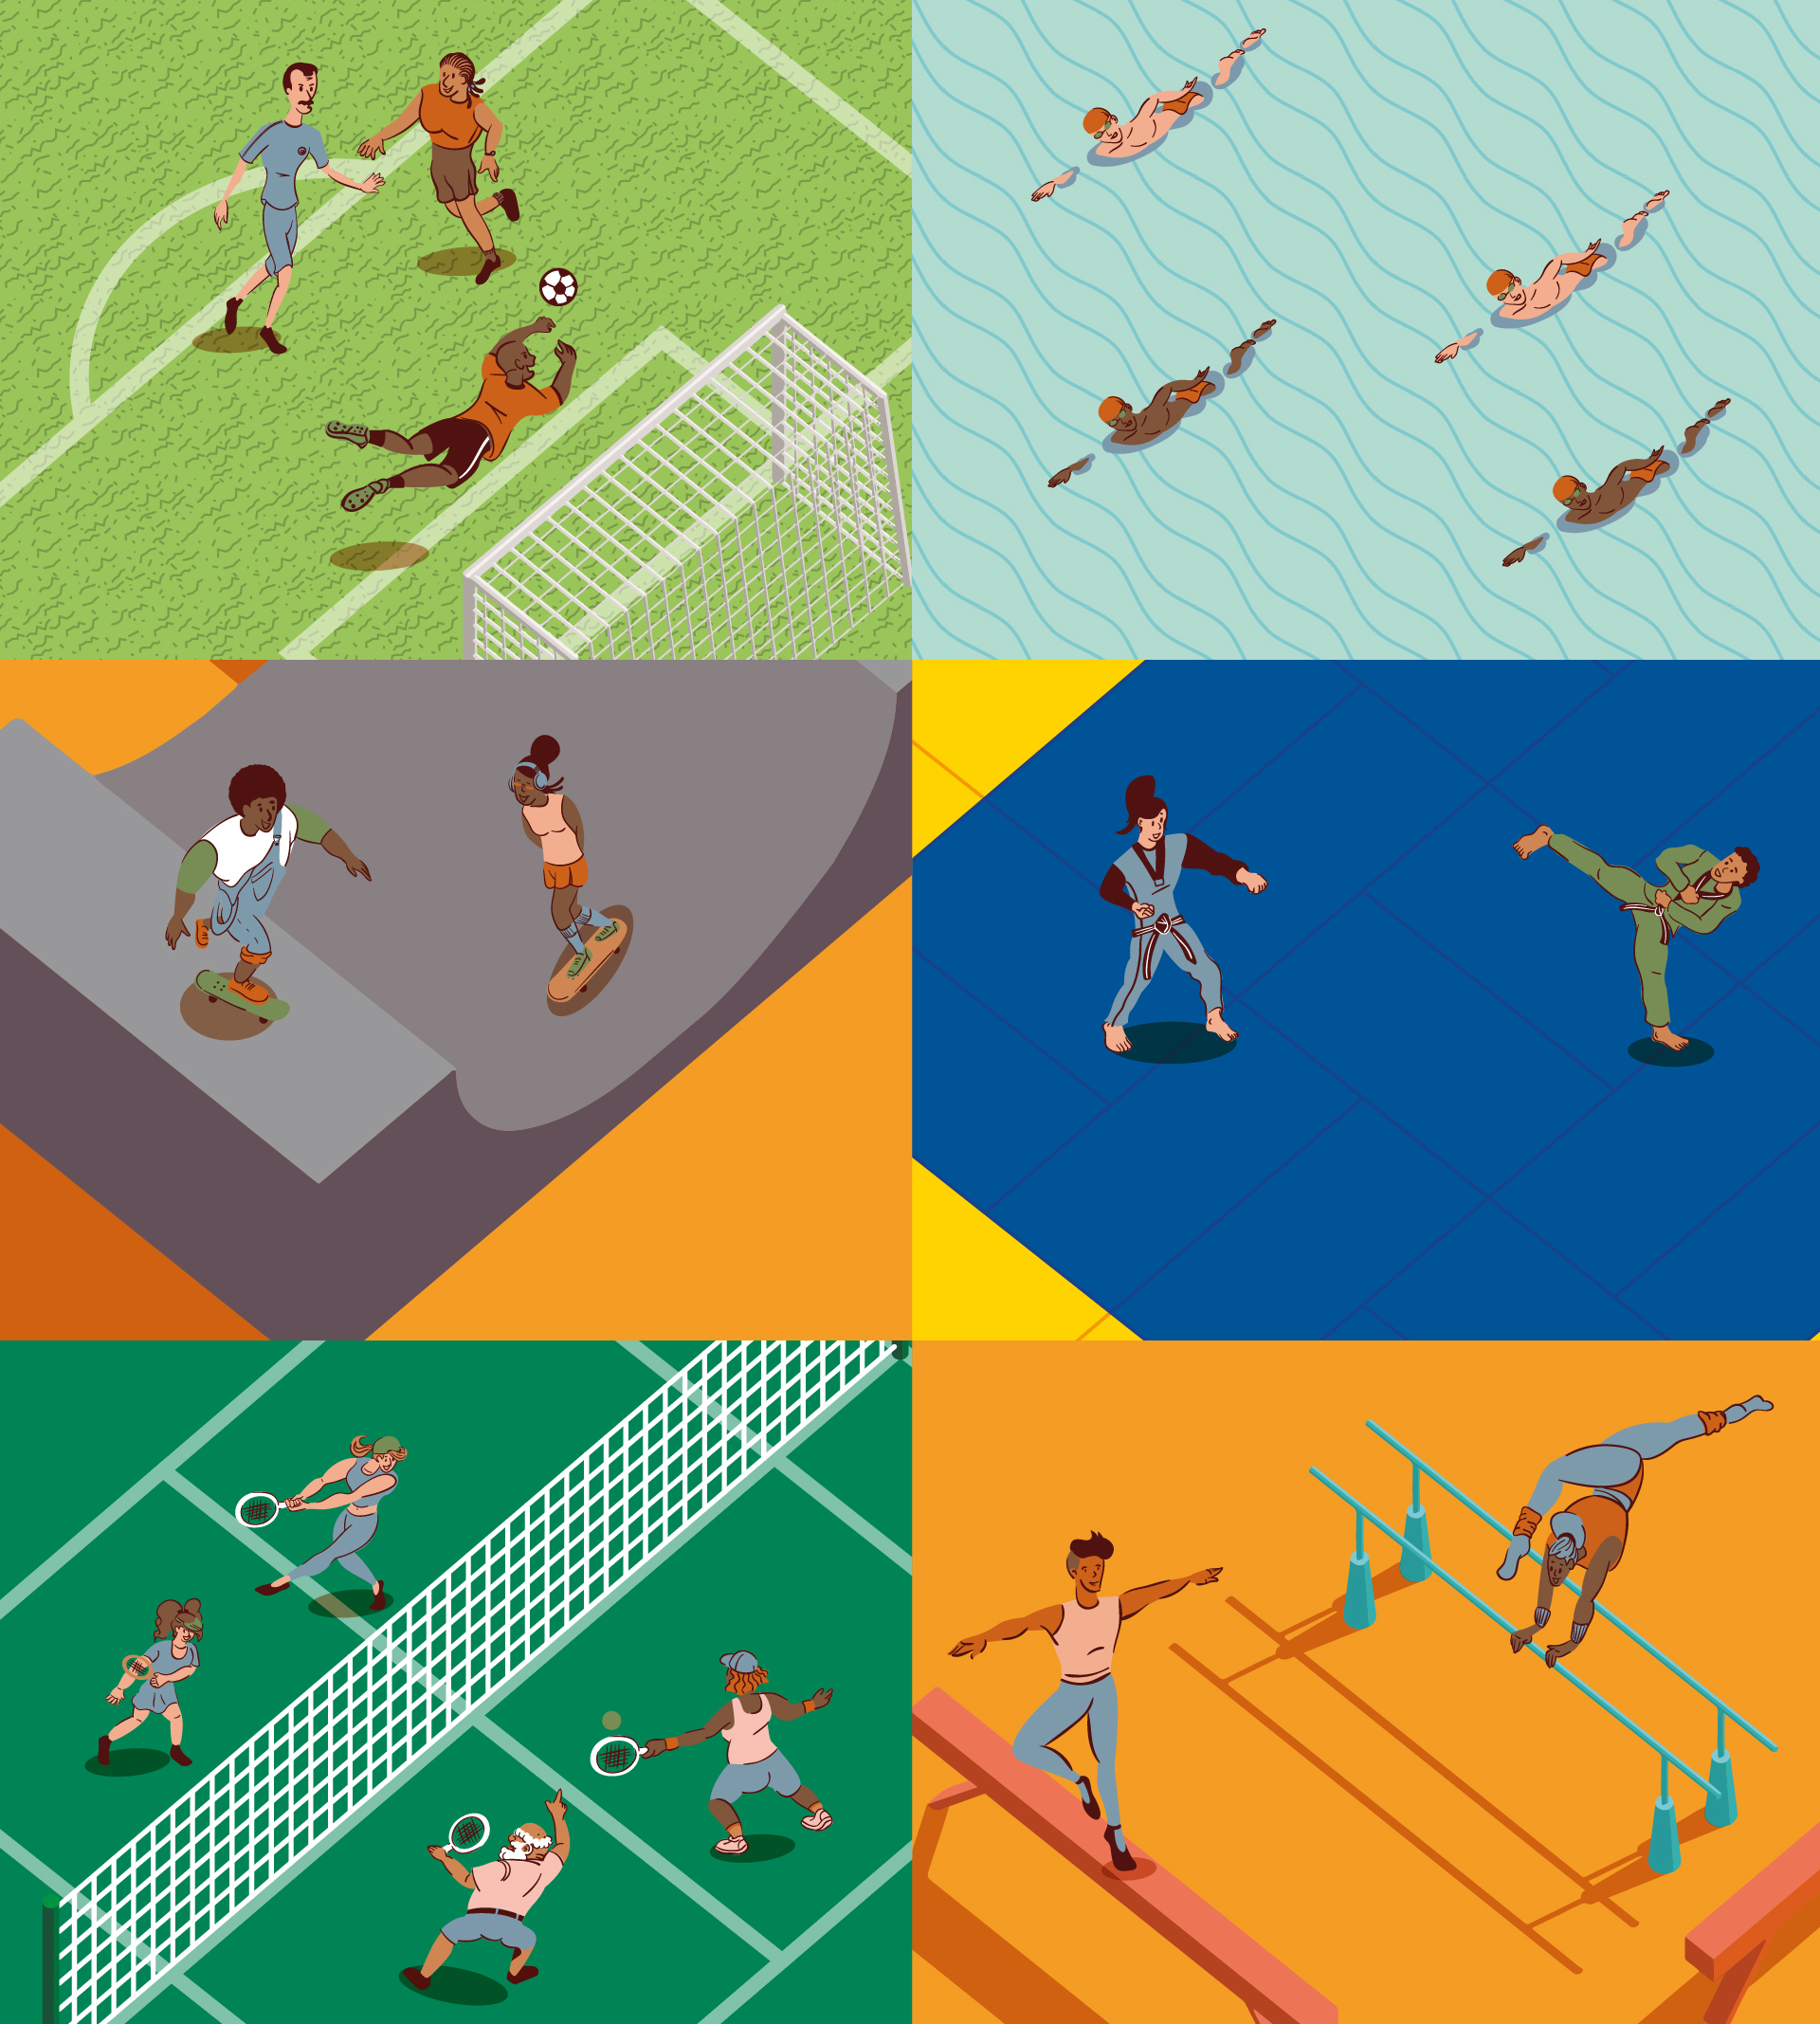 Ilustração de várias práticas esportivas, como futebol, natação, skate, tenis e outras.